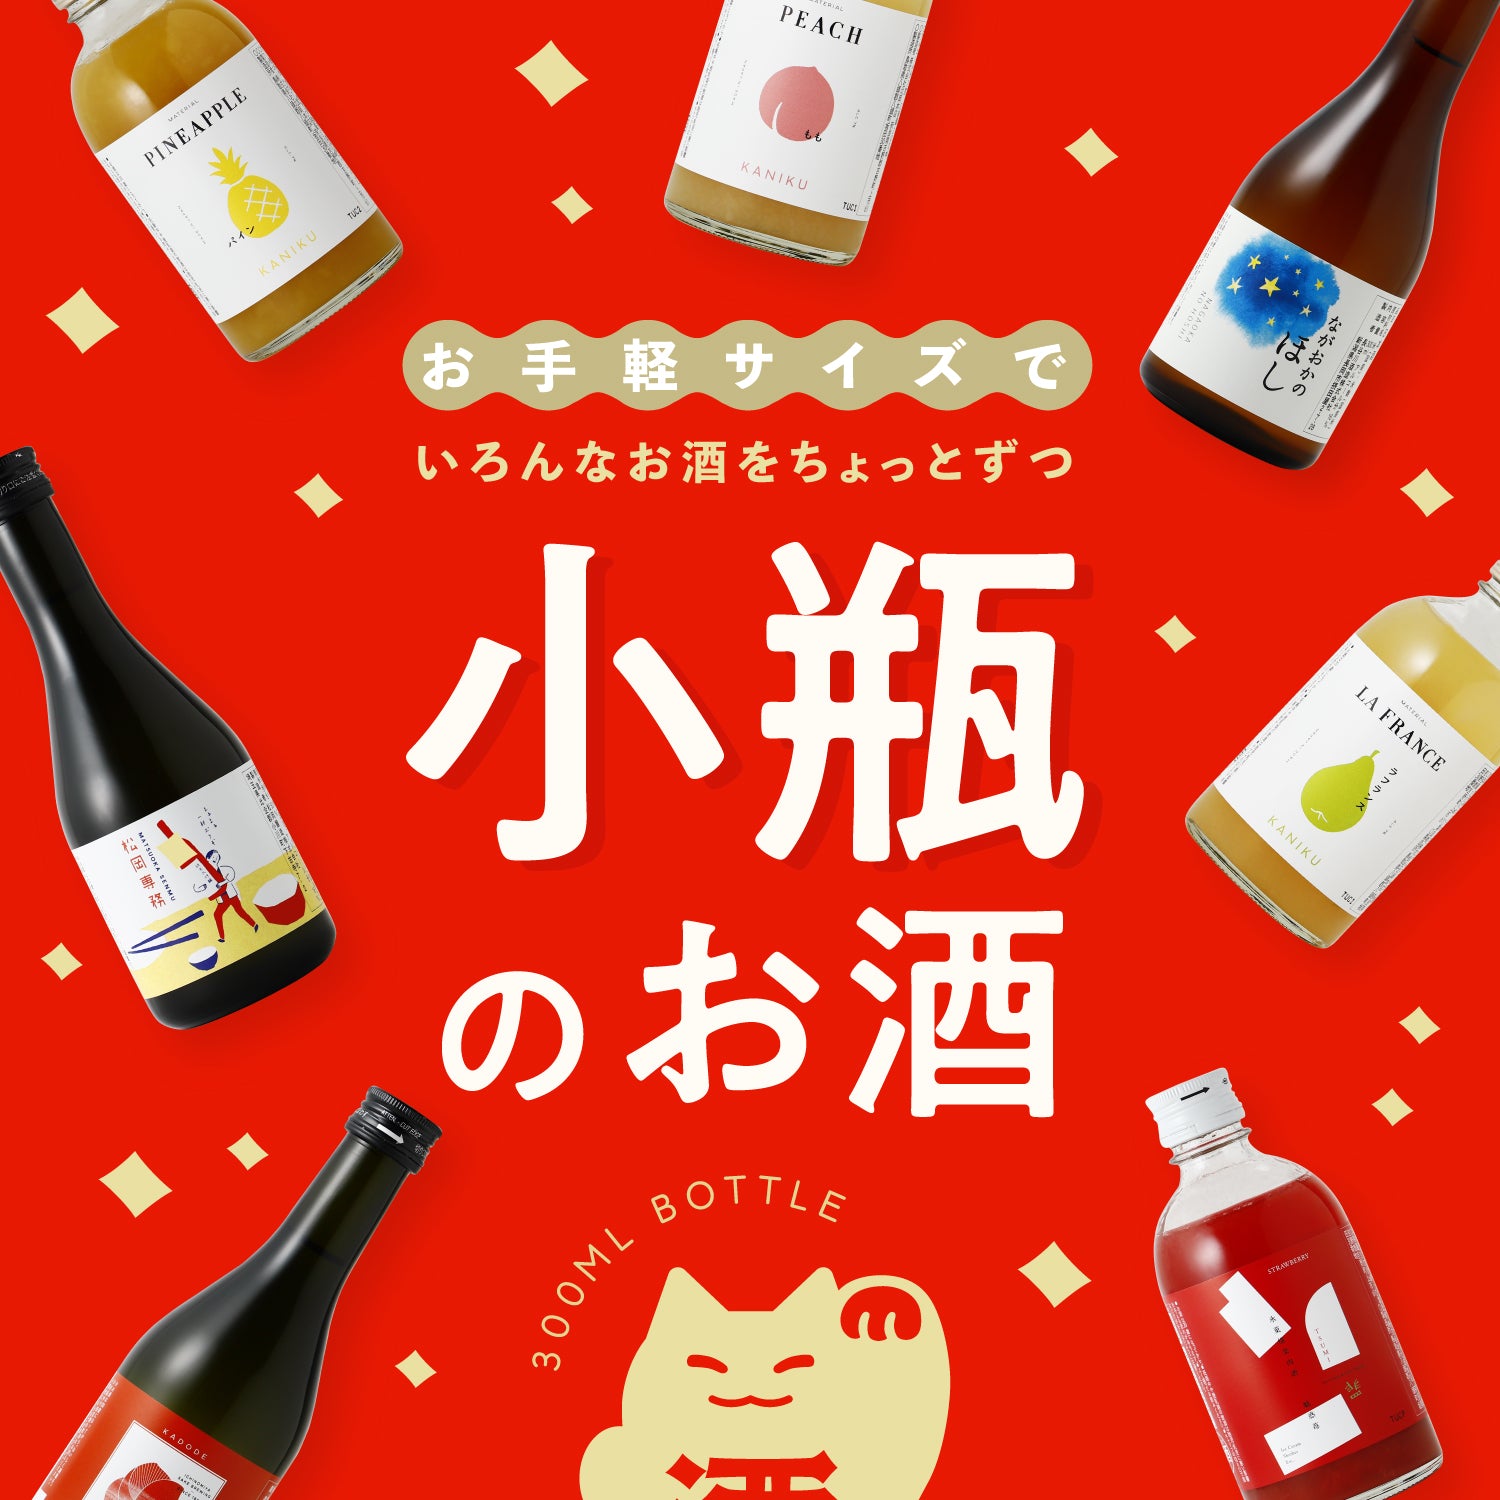 【ギフトボックス付き】小瓶6連酒ガチャ -果実酒・梅酒・リキュール-